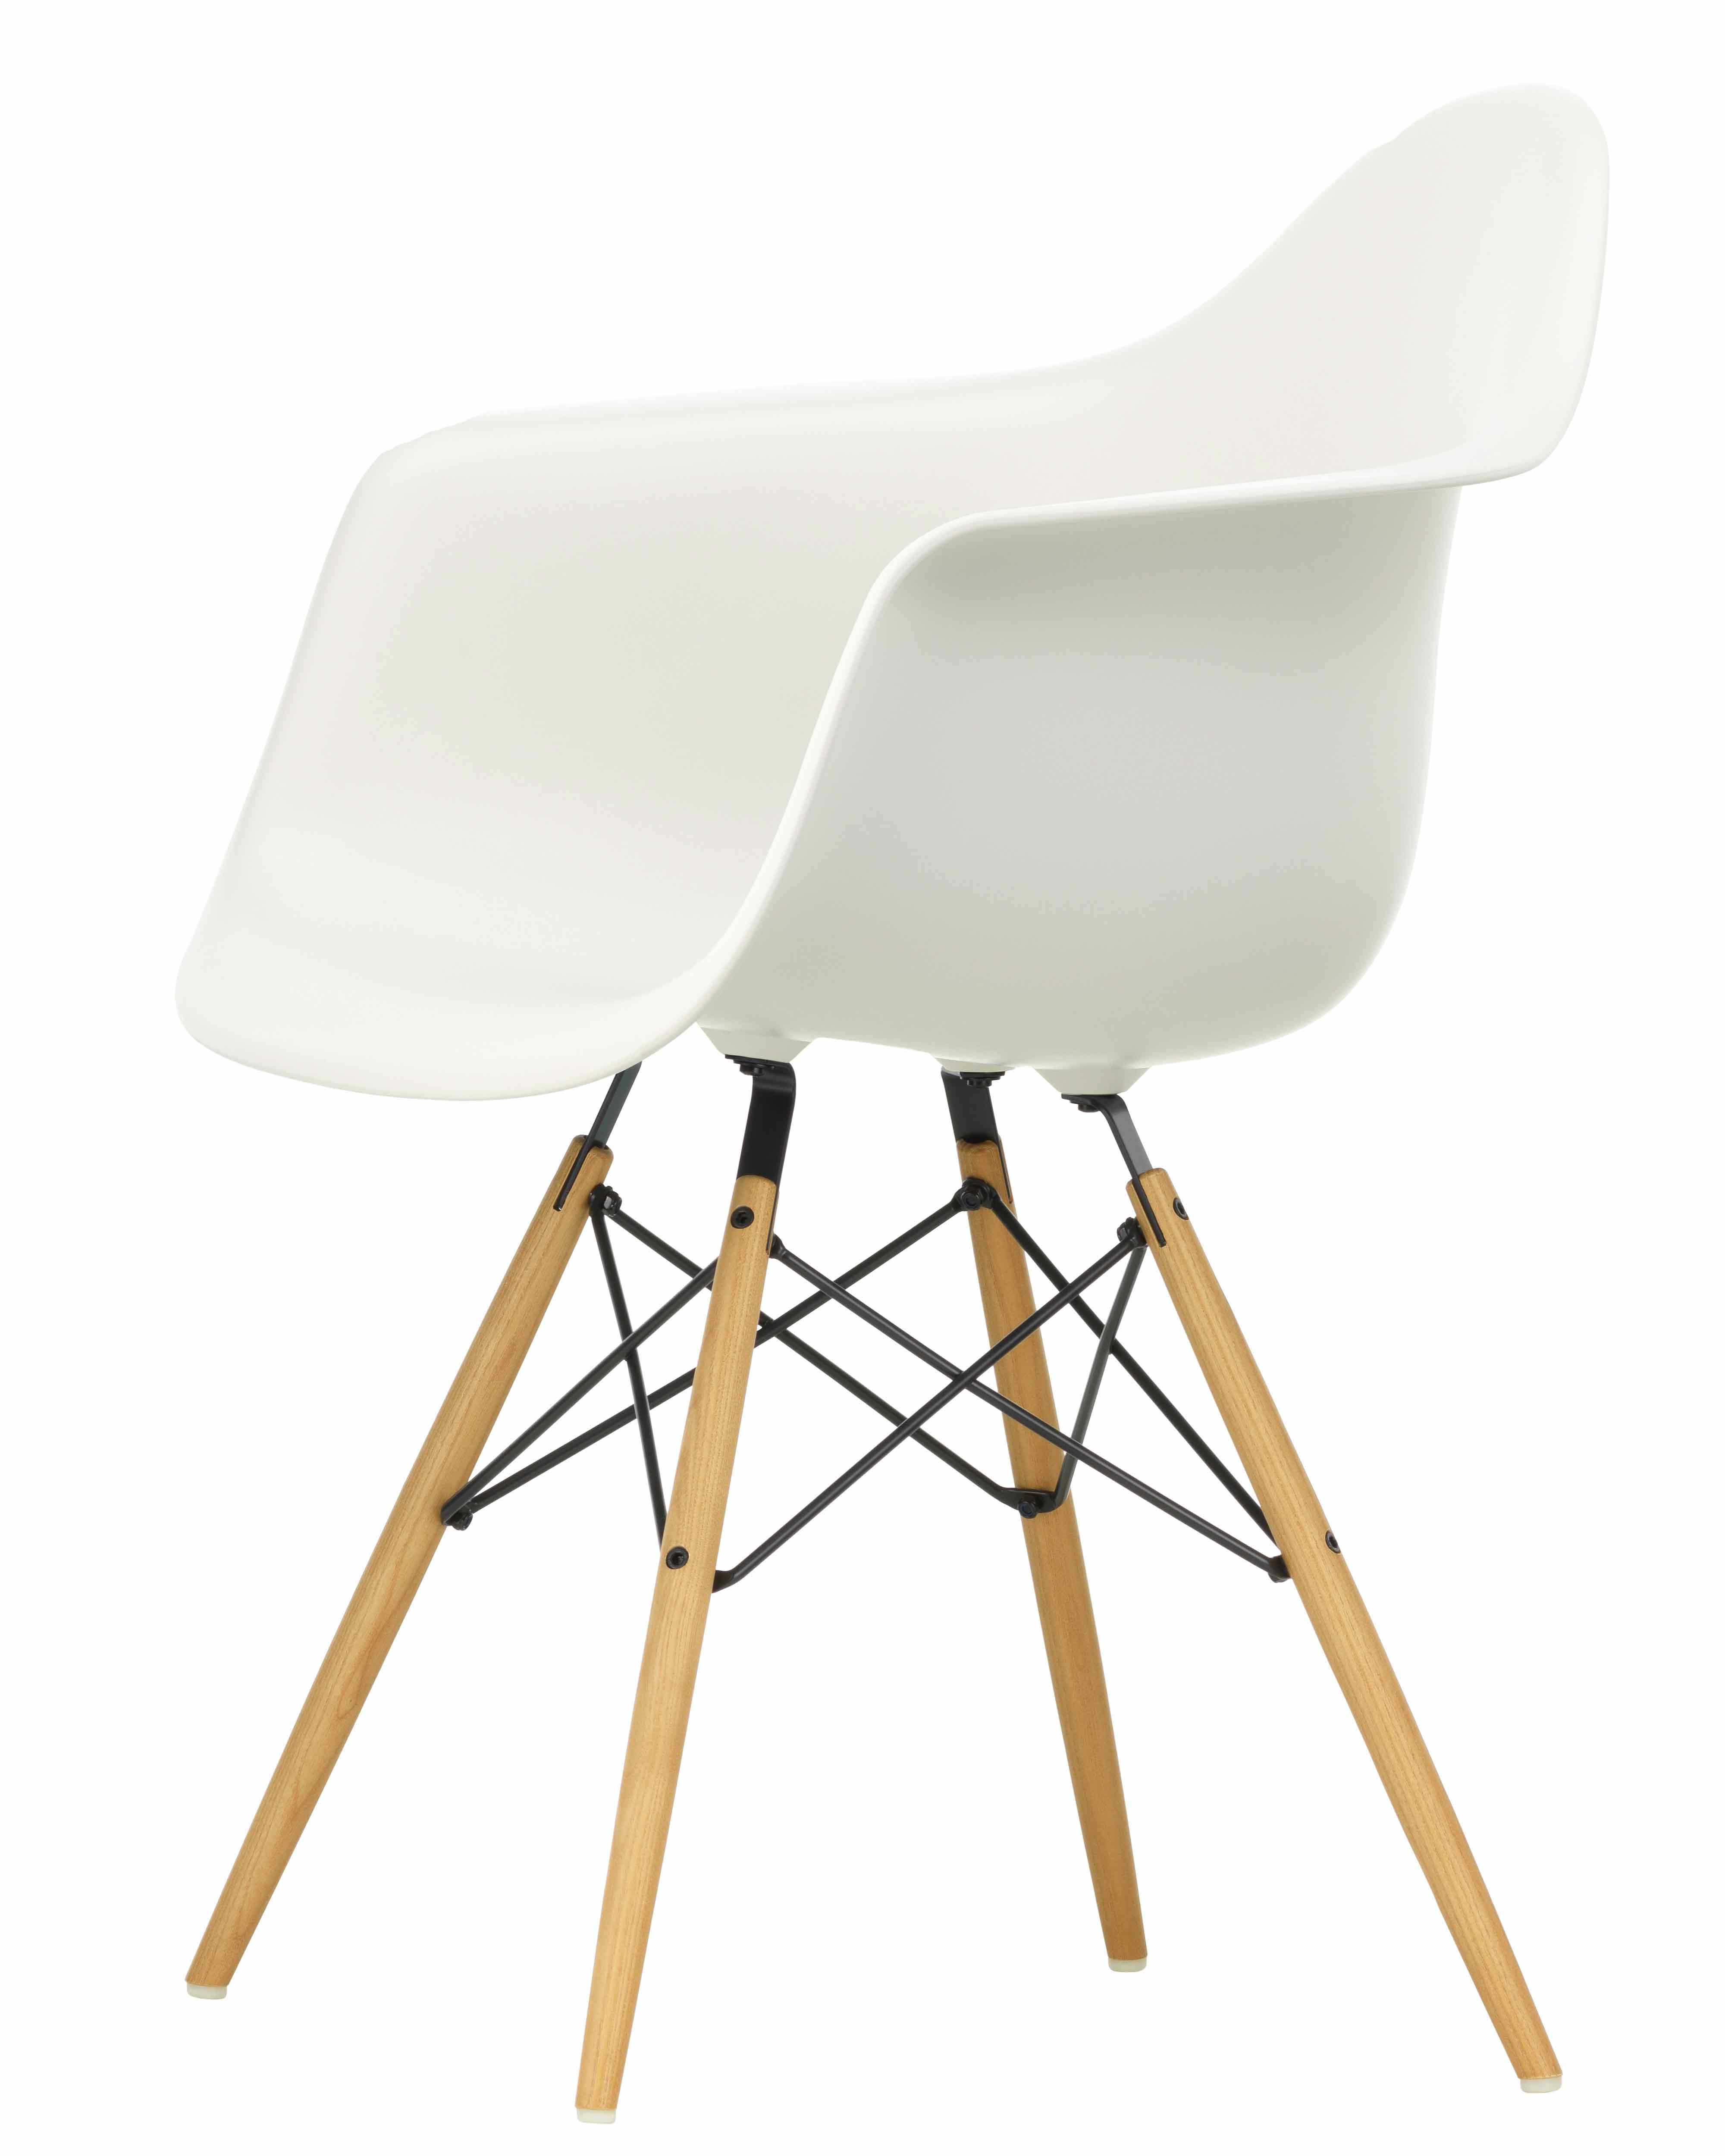 Designerstuhl Side chair DAW in weiss mit Holzuntergestell von Vitra jetzt im LHL Onlineshop kaufen – Schraegansicht